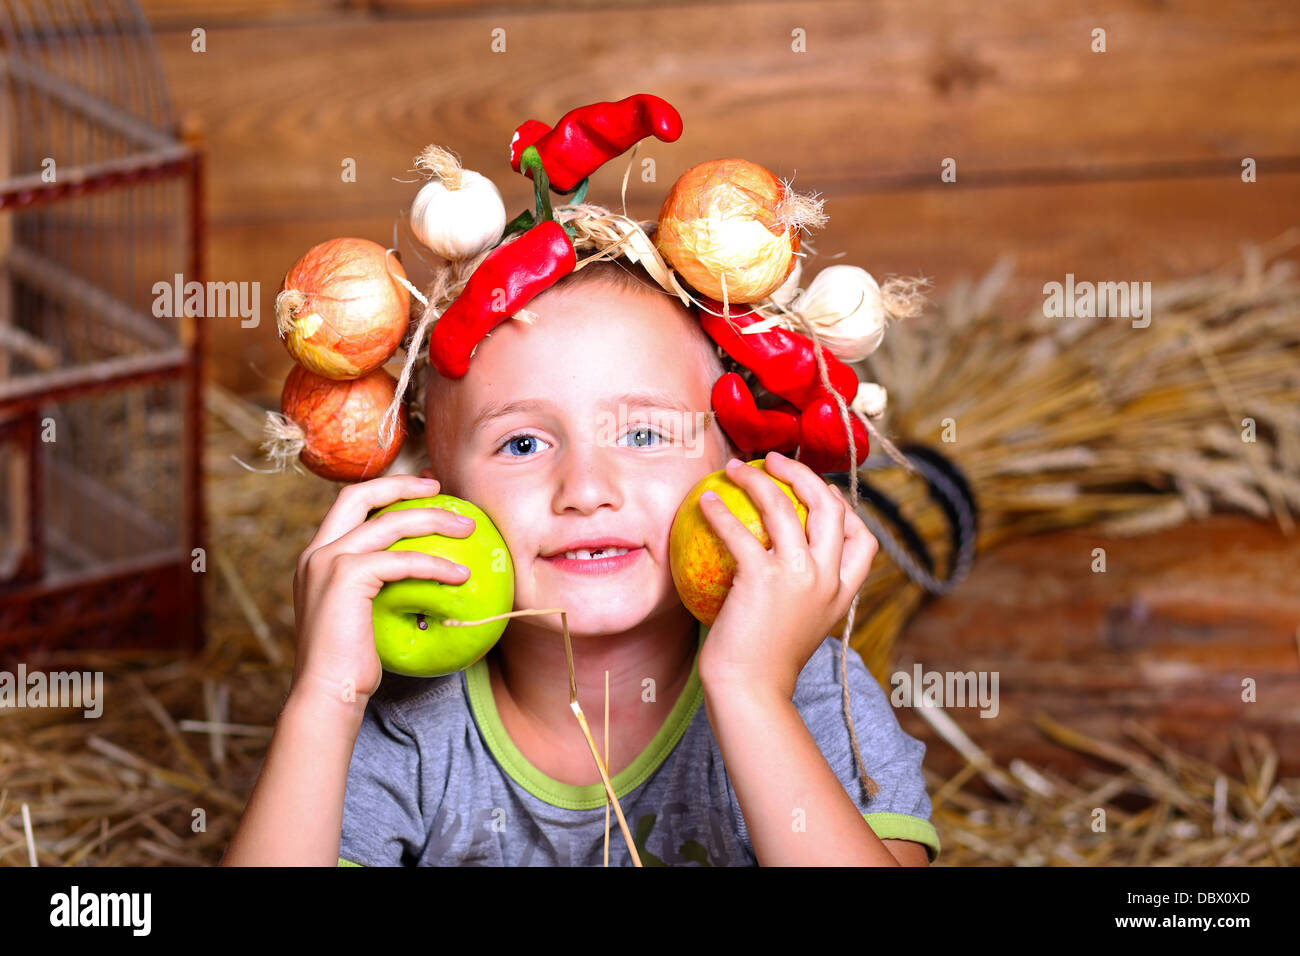 Apfel, junge, Stuhl, Kind, Land, Bursche, Kerl, Mann, Menschen, Stroh, Teen, Dorf Stockfoto